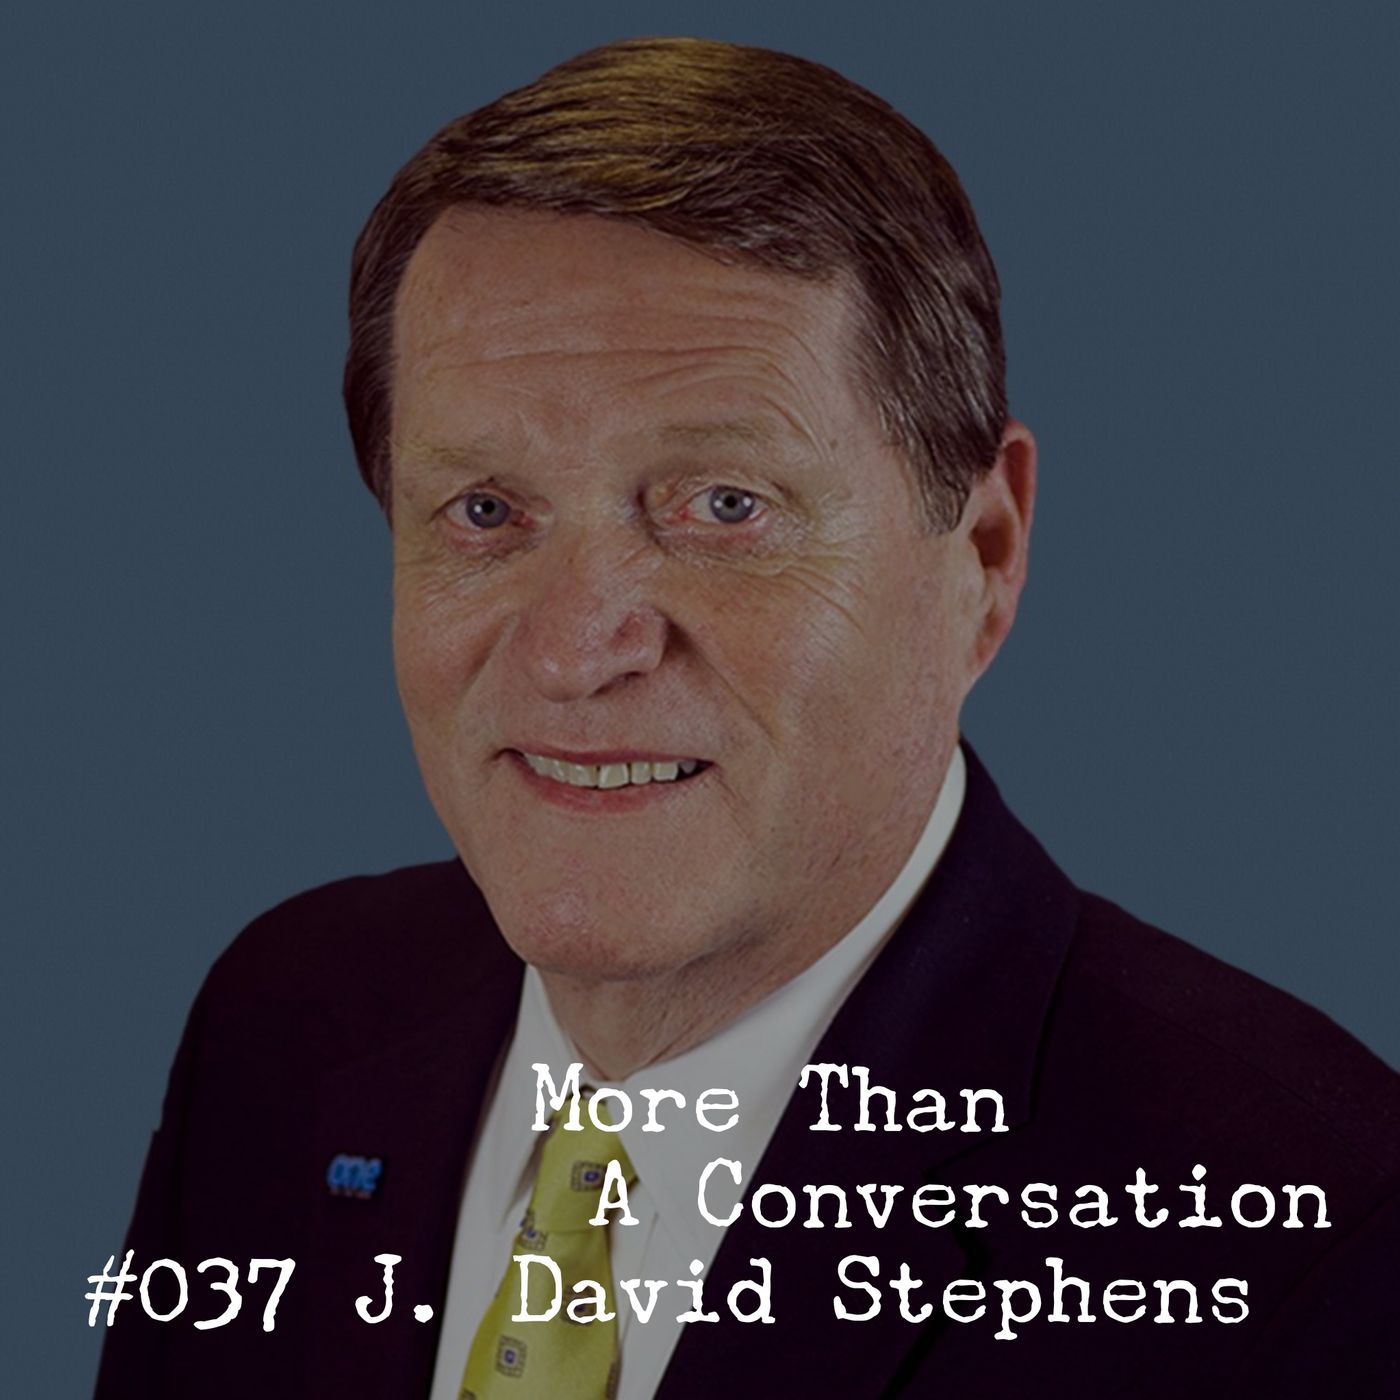 #037 J David Stephens